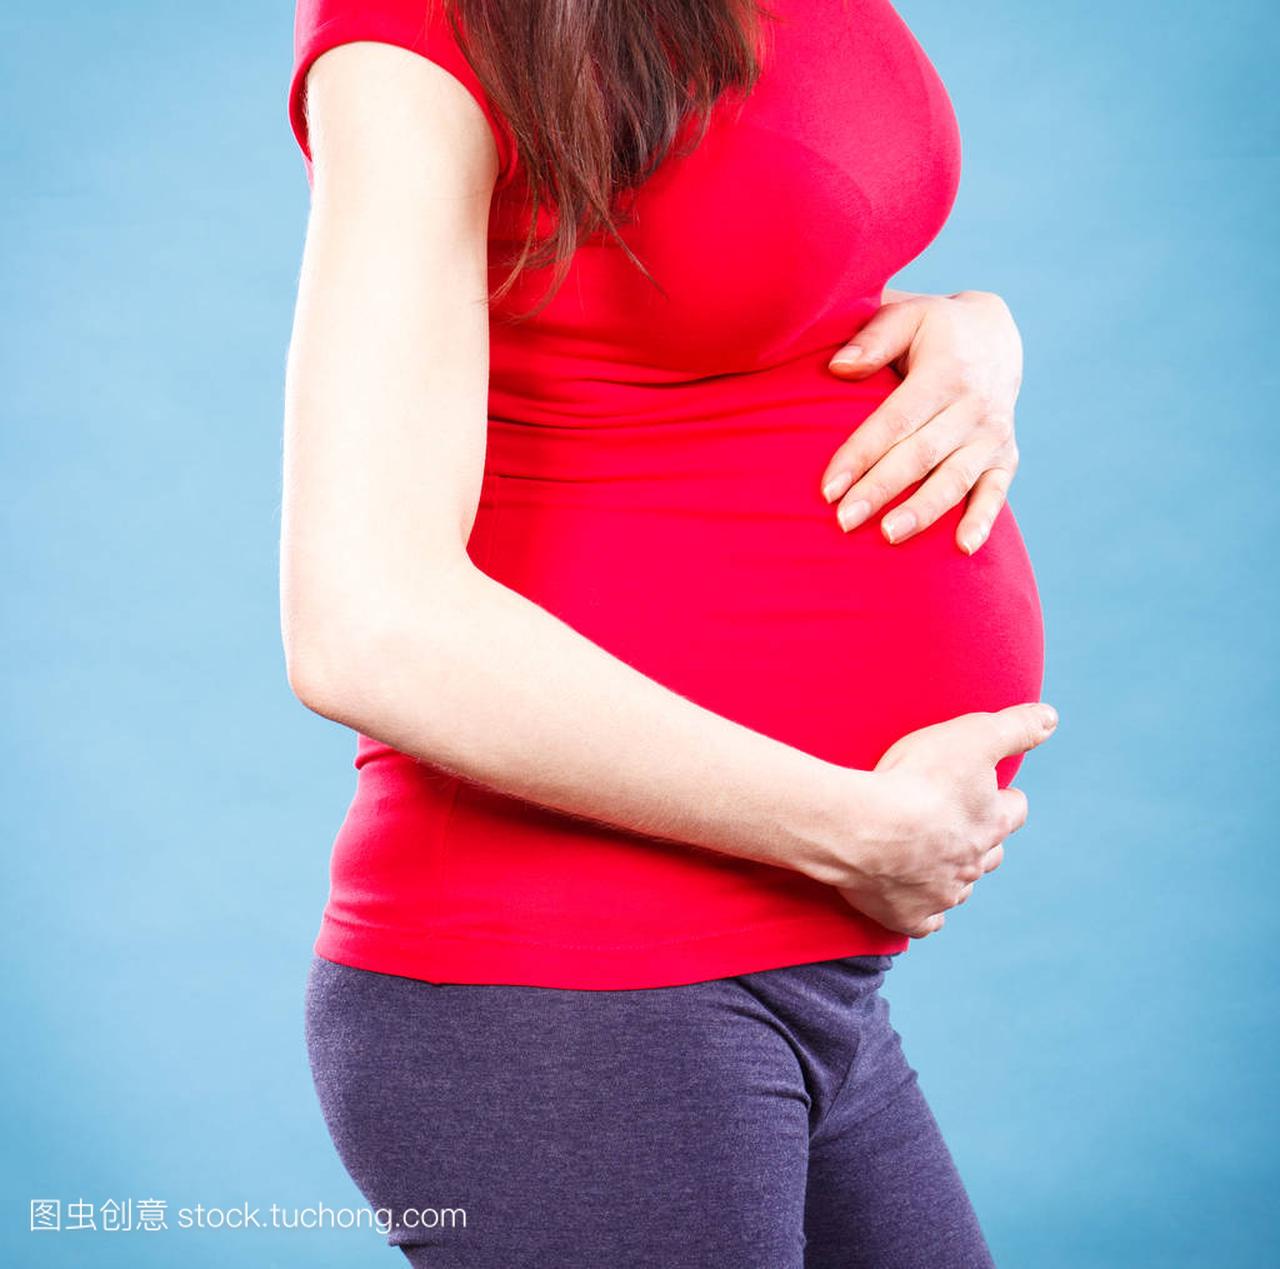 孕妇的肚子痛,摸她的肚子,痛在怀孕和流产的风